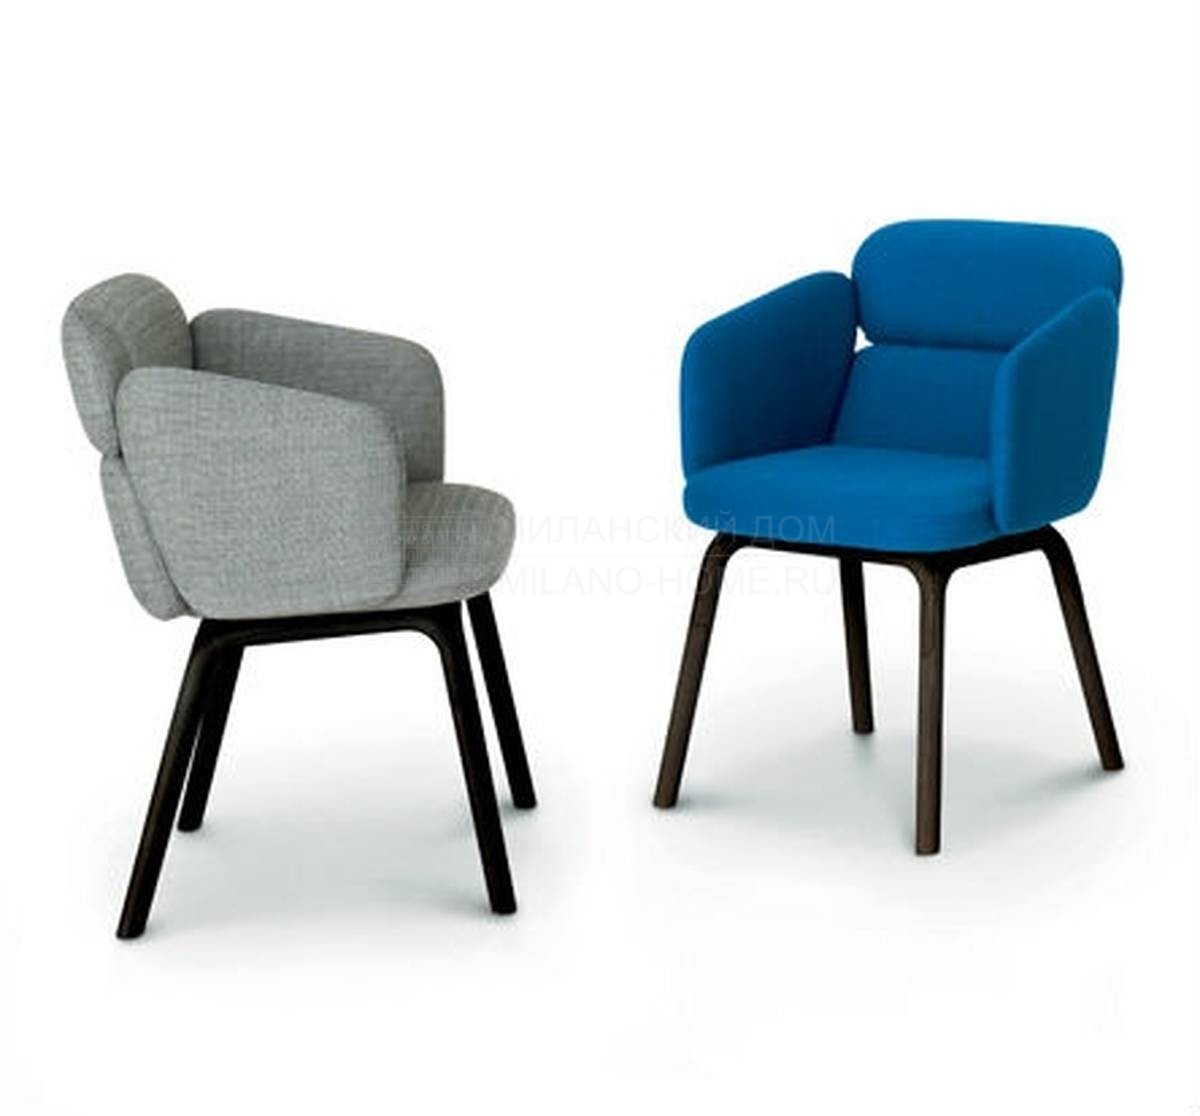 Полукресло Bliss chair из Италии фабрики ARFLEX